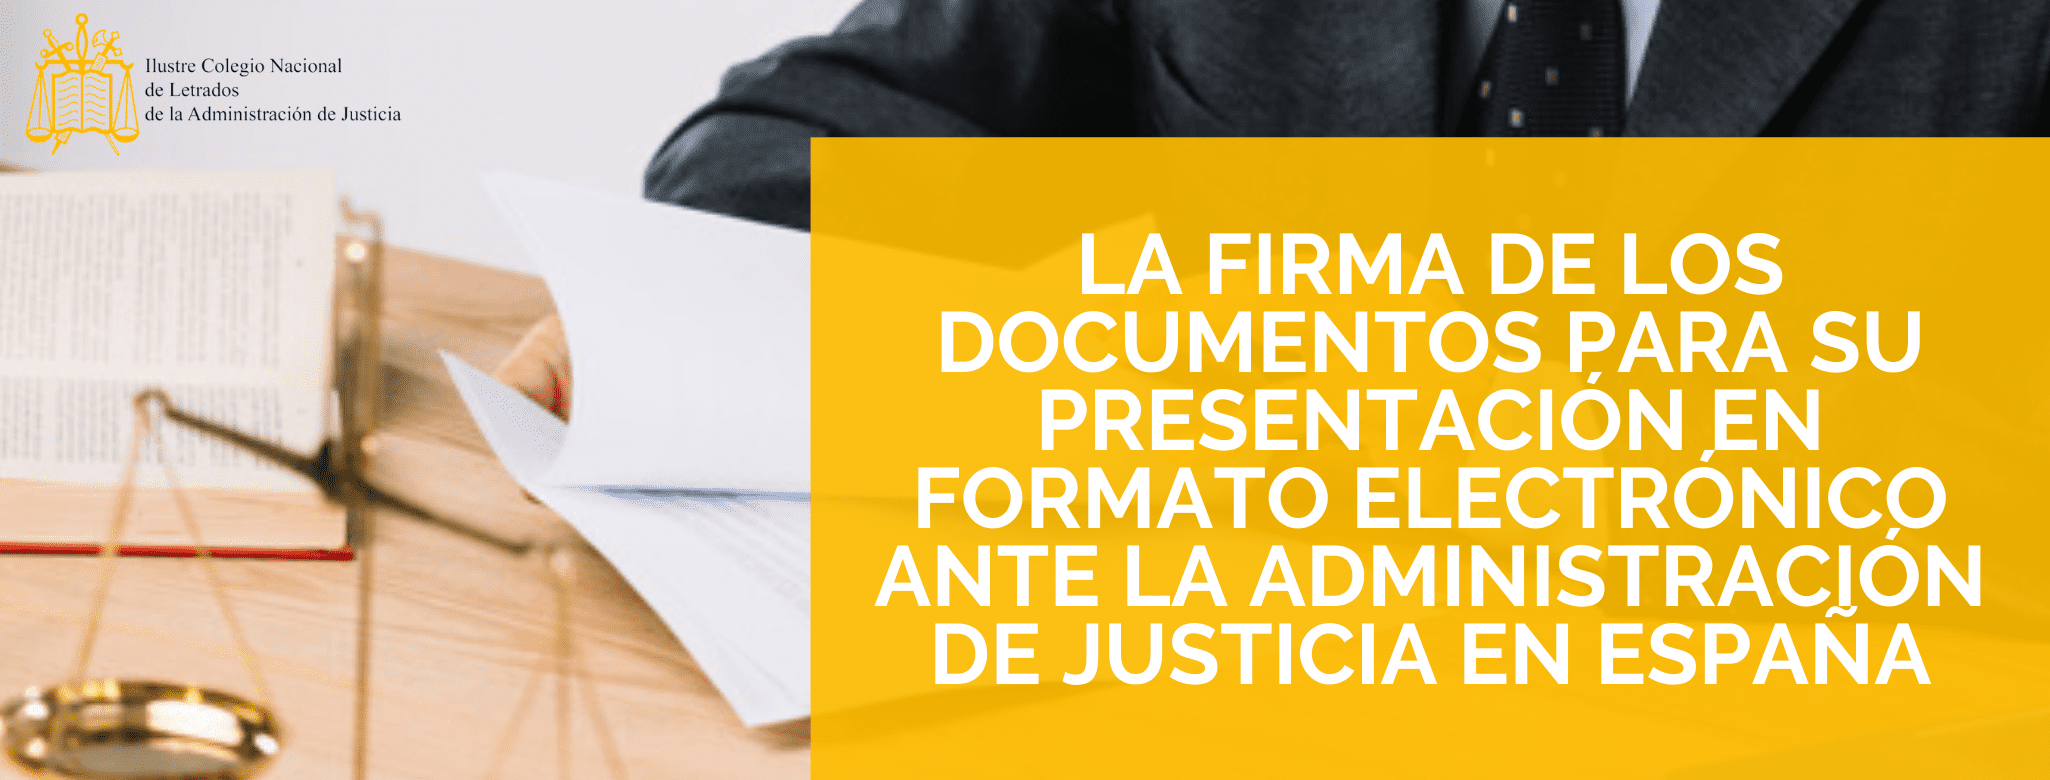 La firma de los documentos para su presentación en formato electrónico ante la Administración de Justicia en España